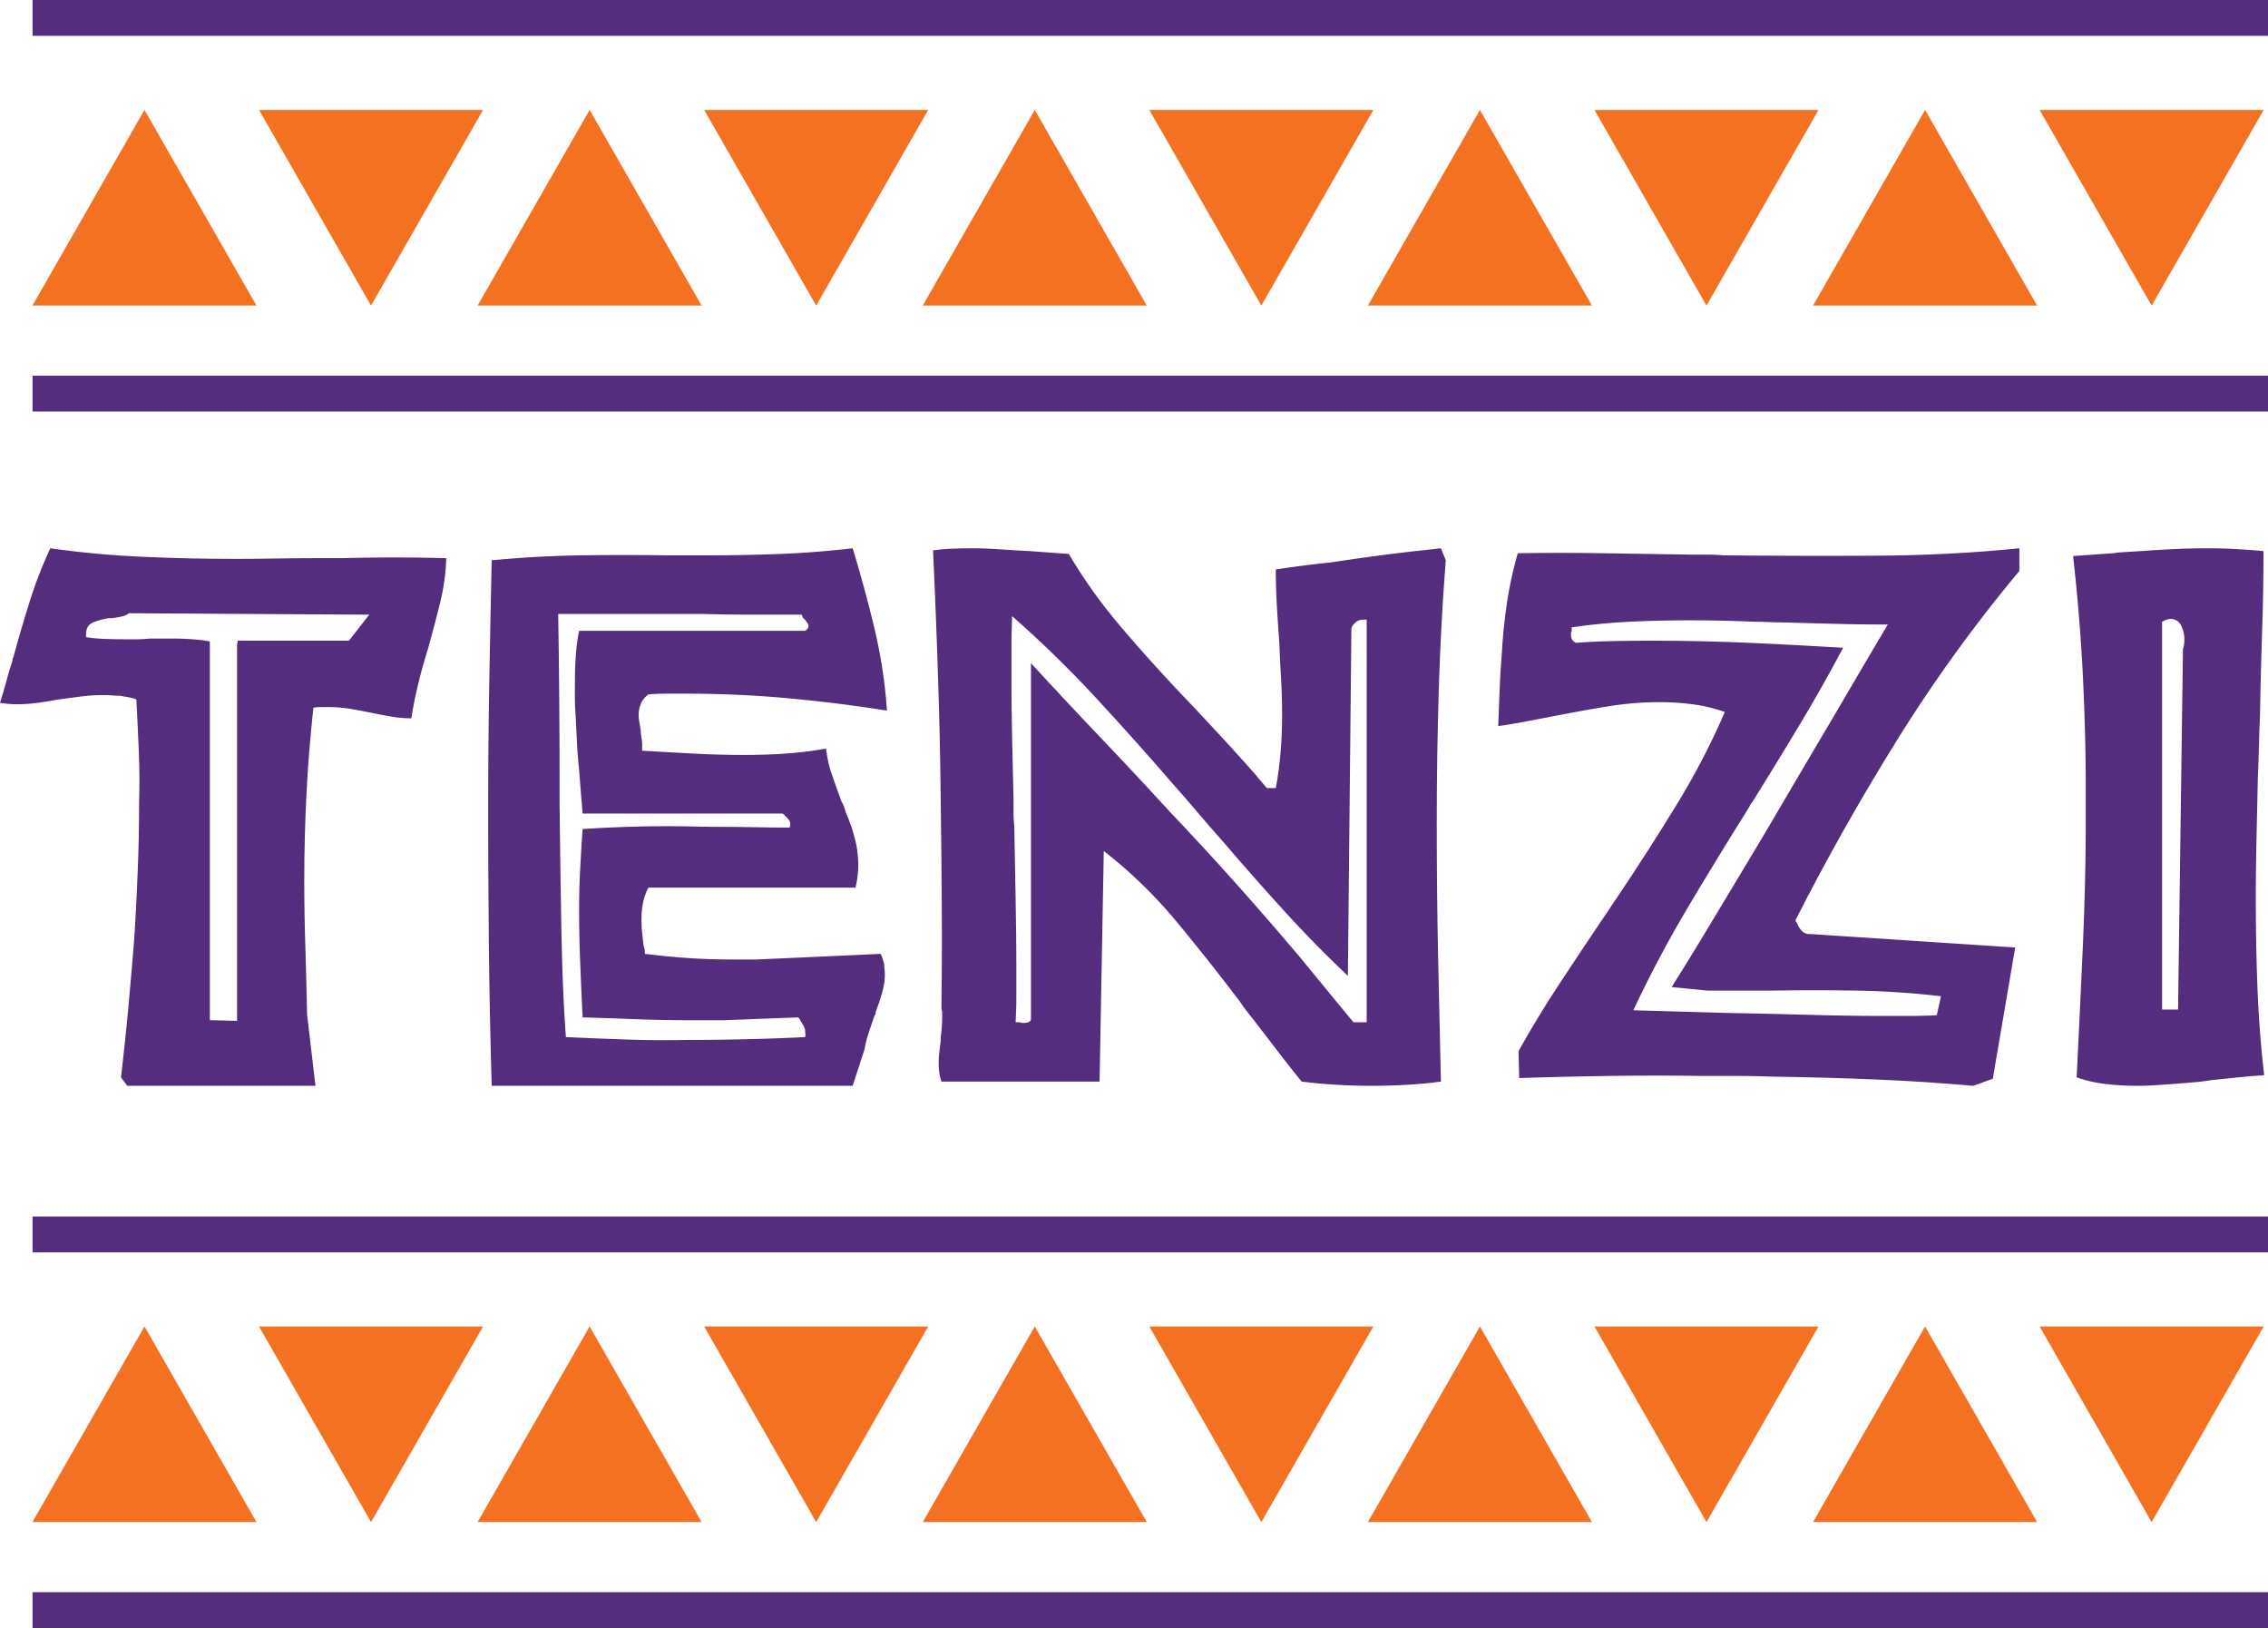 TENZI